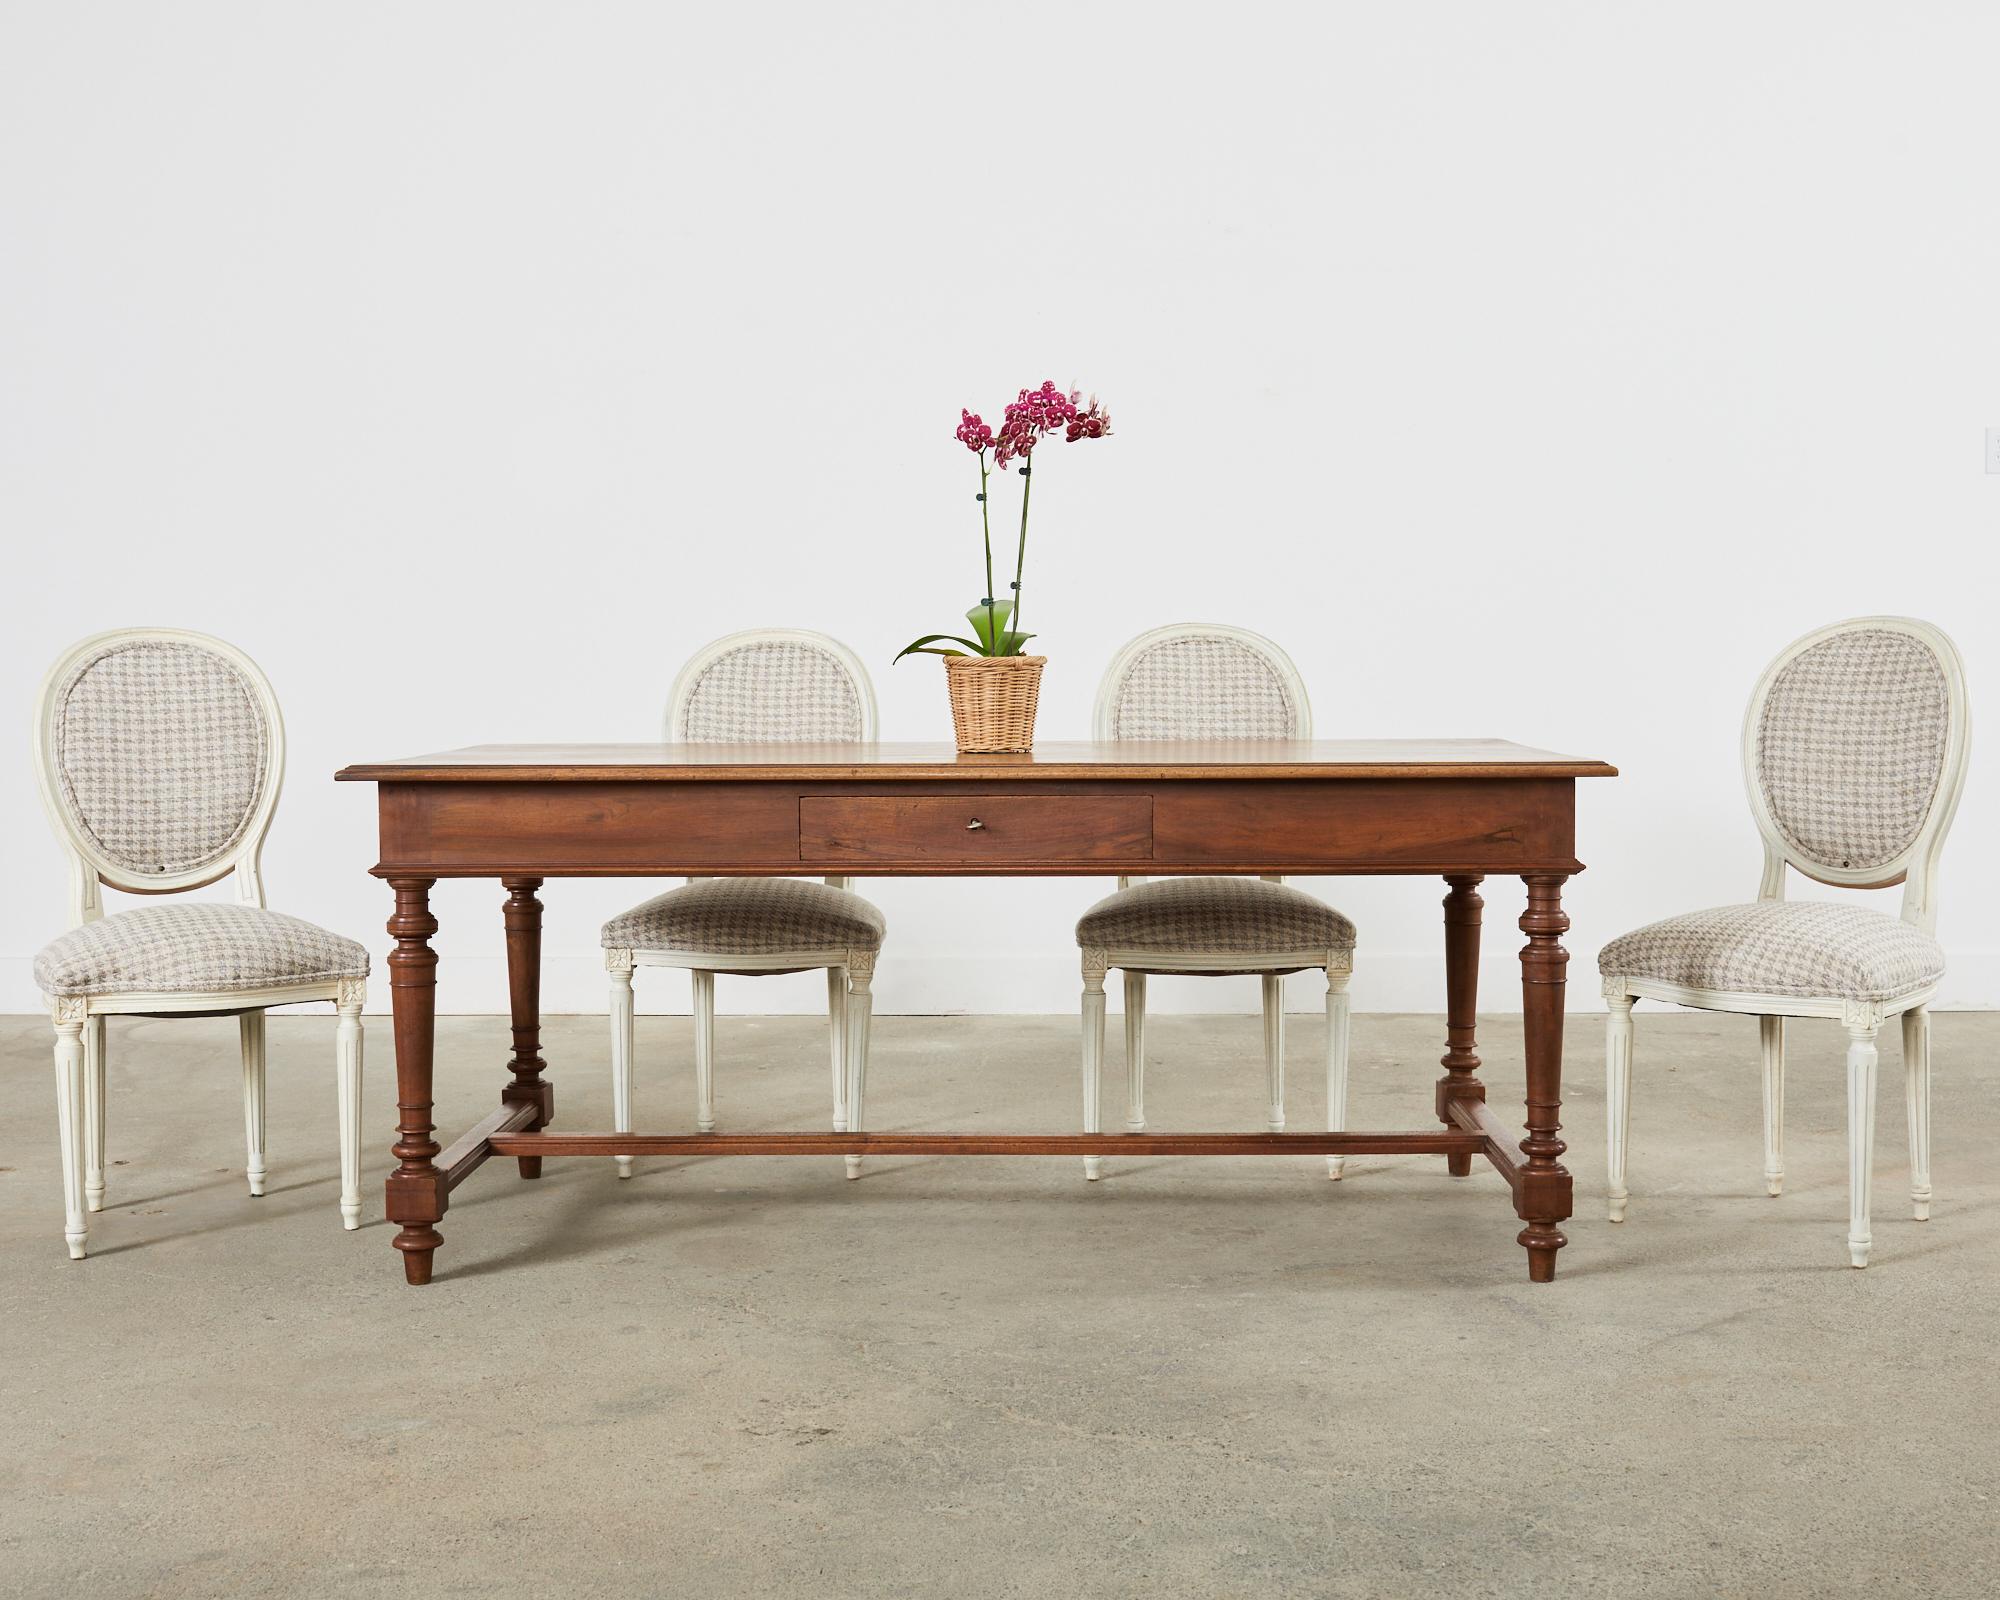 Charmant ensemble de cinq chaises de salle à manger peintes de style Louis XVI. Les chaises présentent une finition en bois peint avec une patine volontairement vieillie et en détresse sur la finition pour imiter l'âge. La finition présente une fine